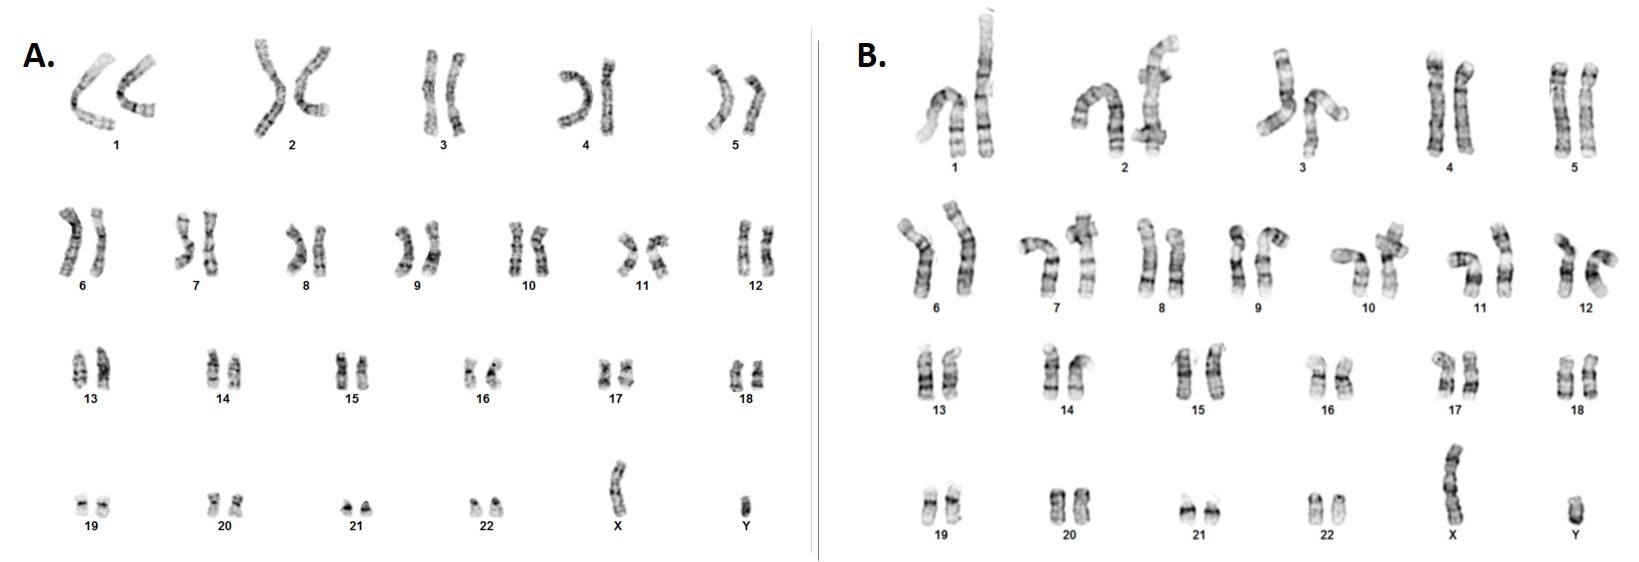 landingpage-asc-6003-gh-karyotype-comparison